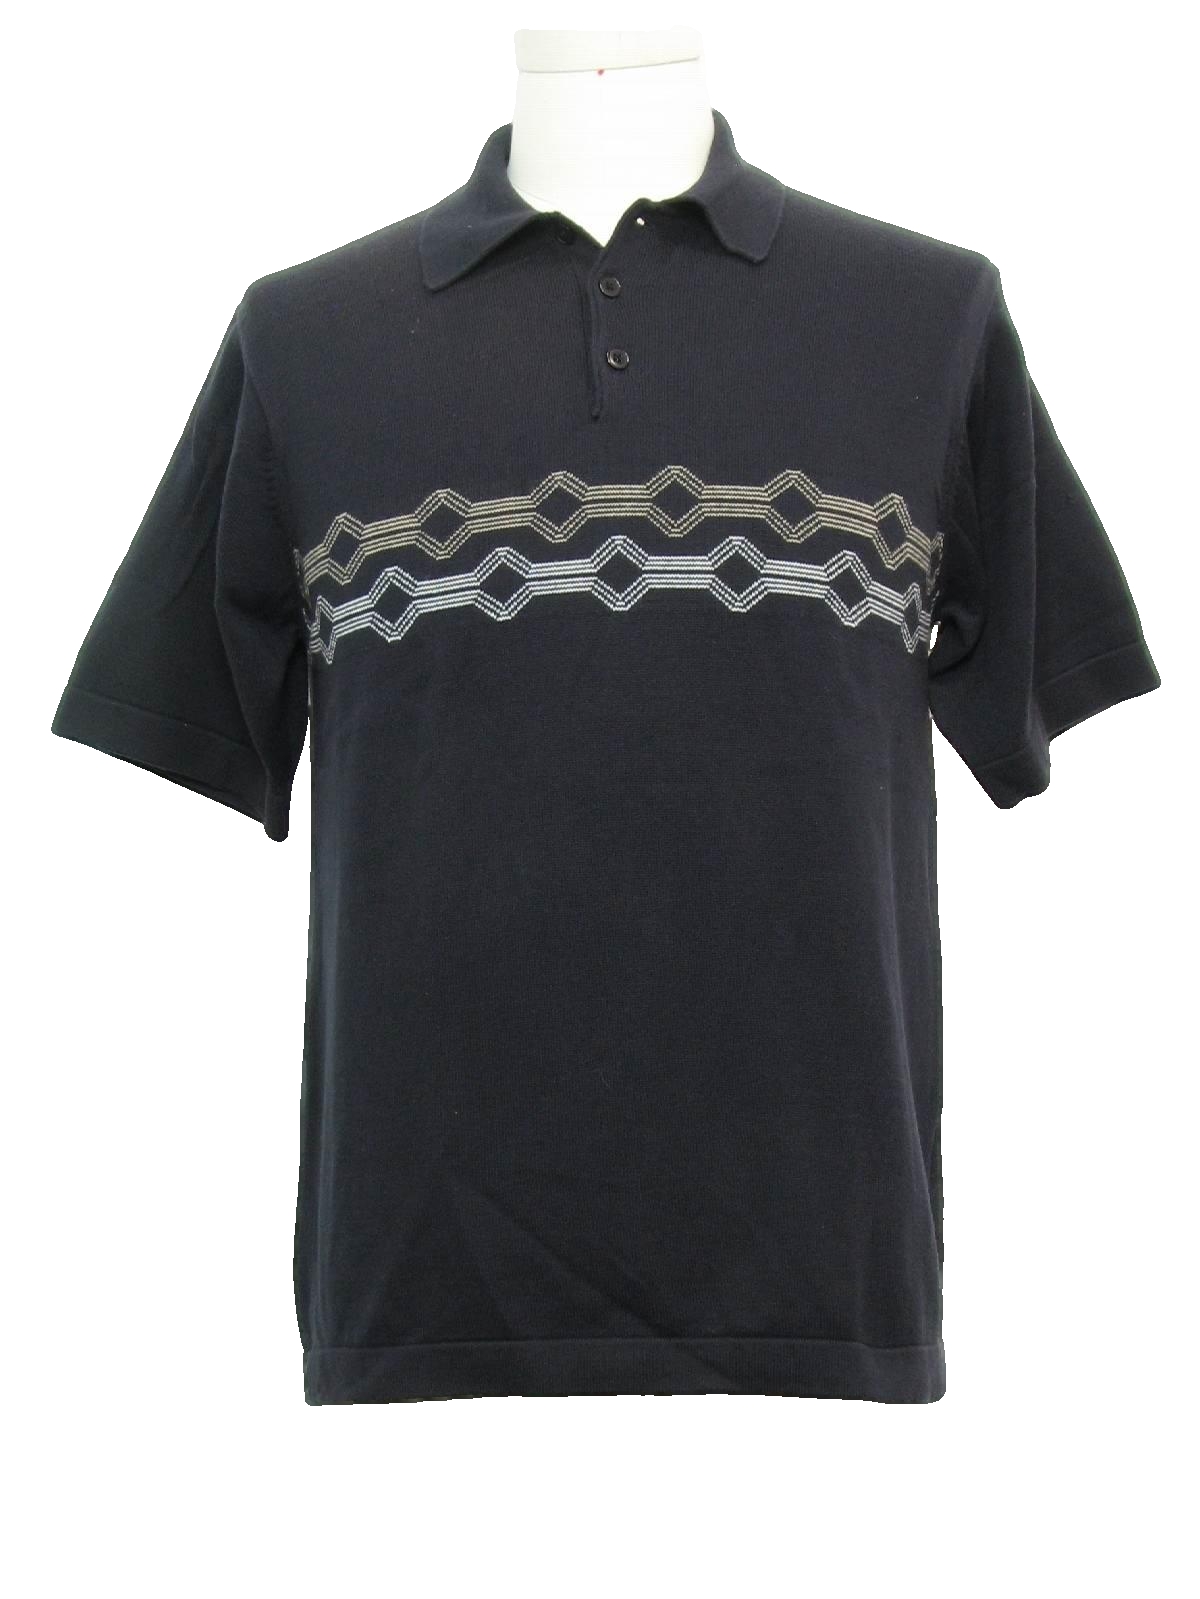 Eighties Cambridge Classics Knit Shirt: 80s -Cambridge Classics- Mens ...